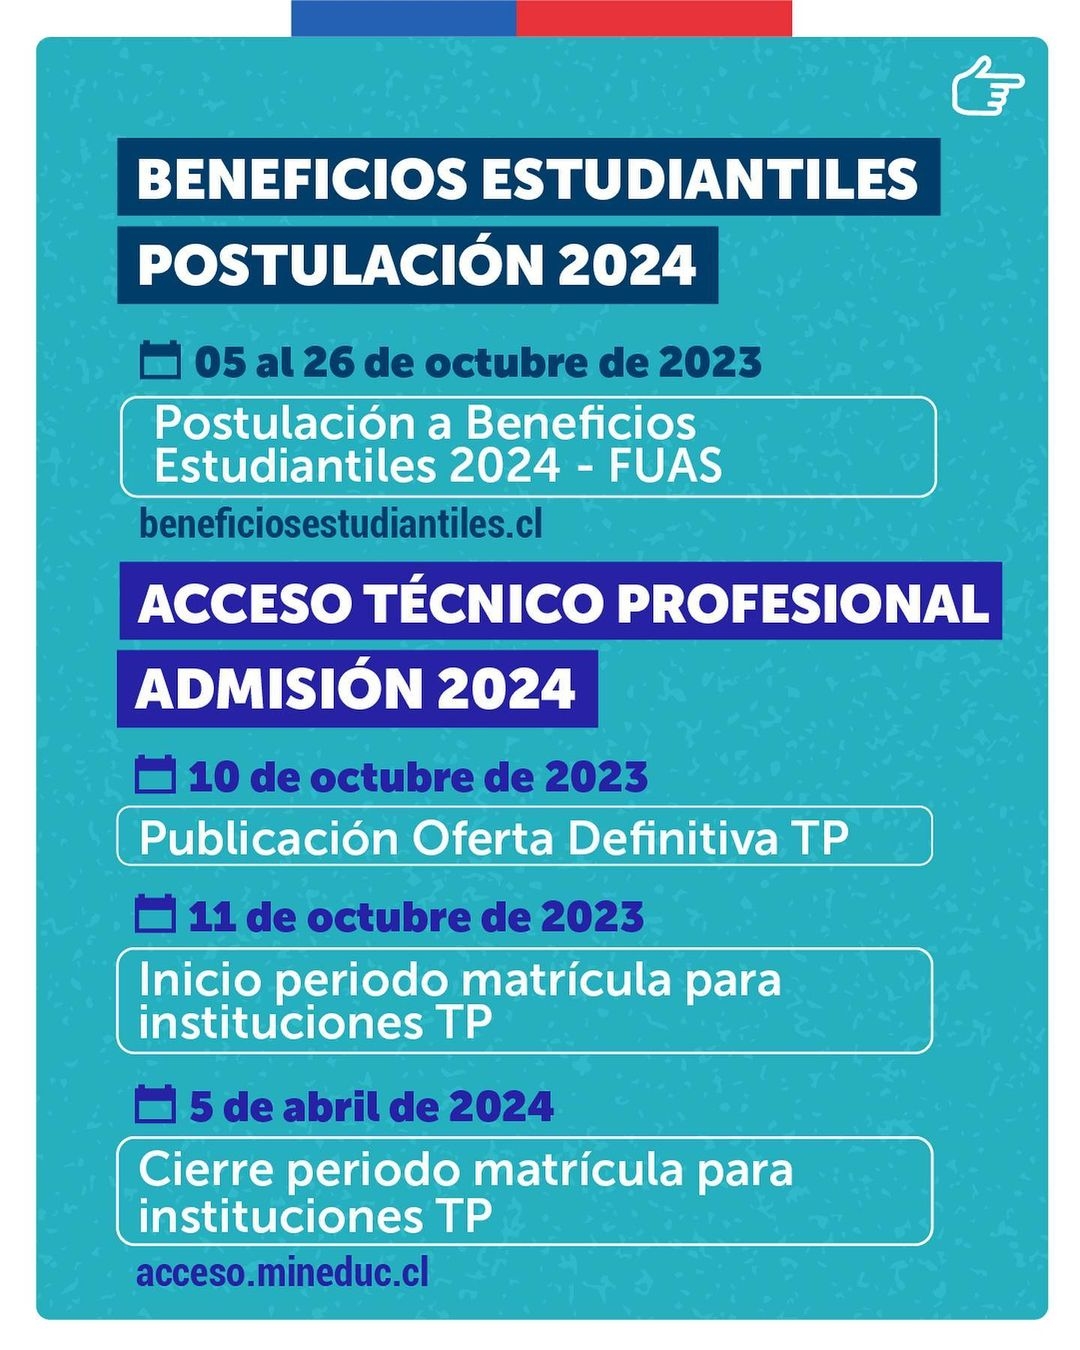 Fechas importantes del proceso de admisión 2024 (Mineduc)